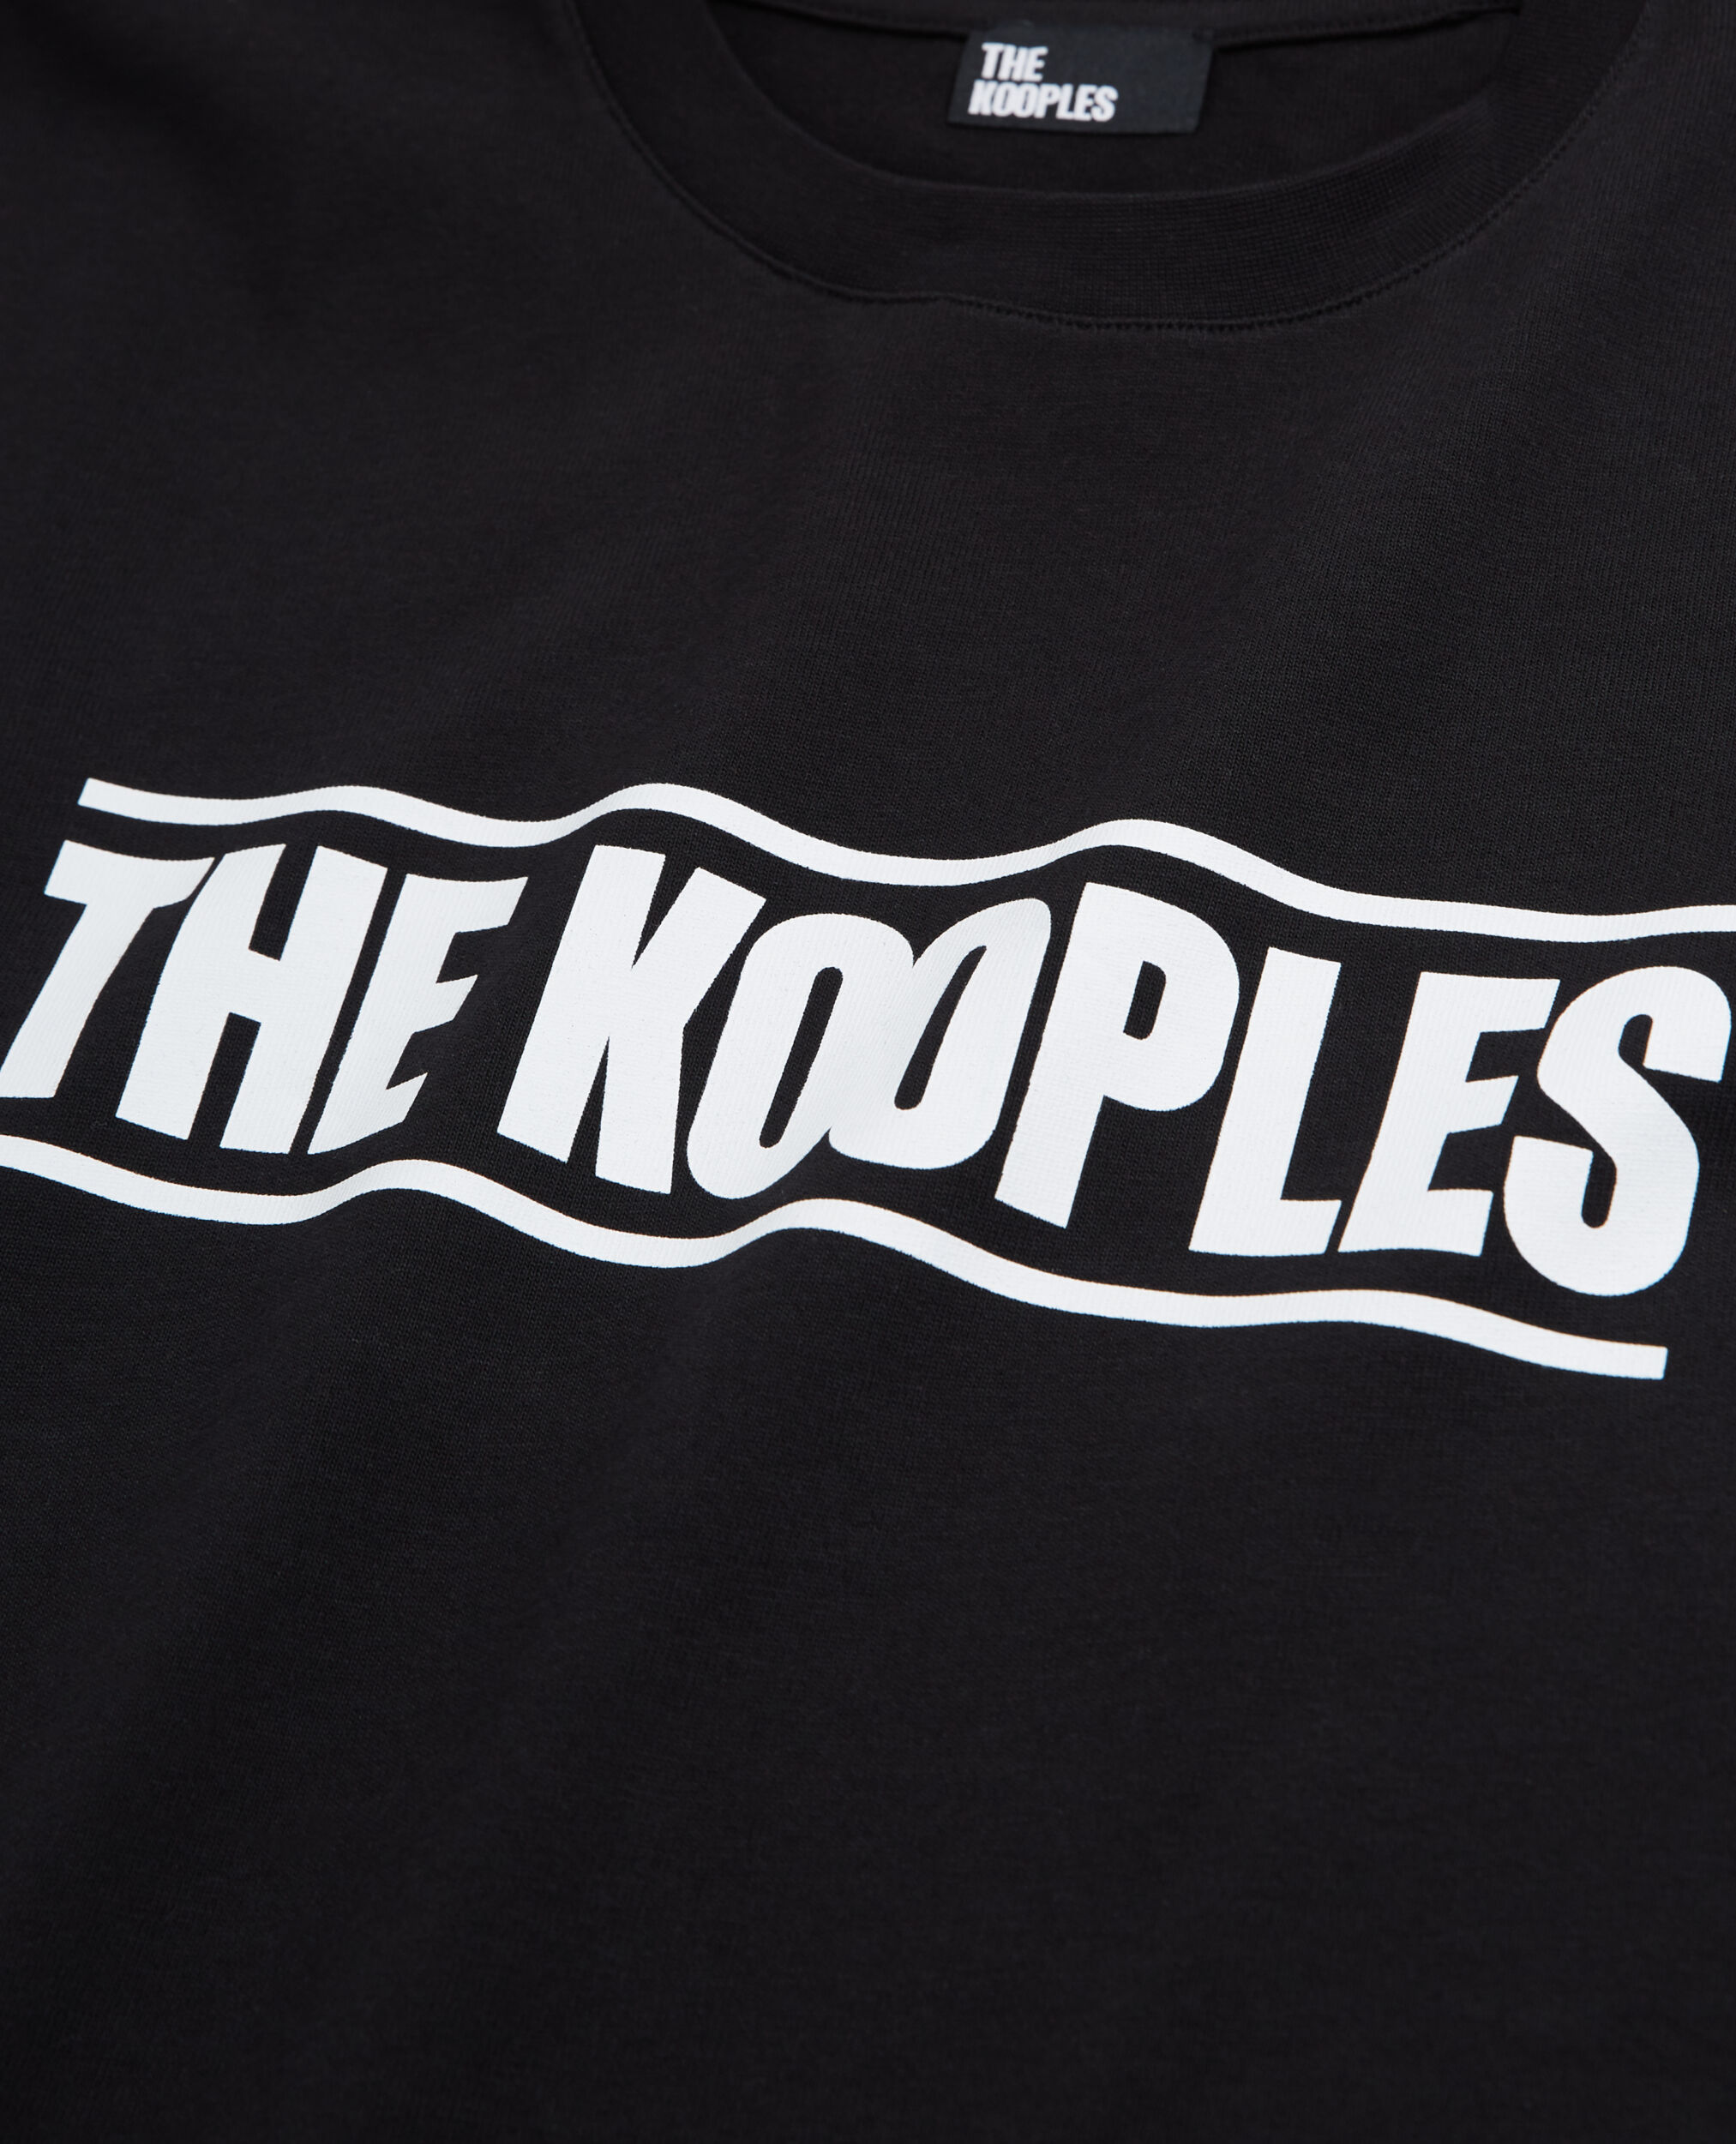 Schwarzes T-Shirt Damen mit The Kooples Logo, BLACK, hi-res image number null